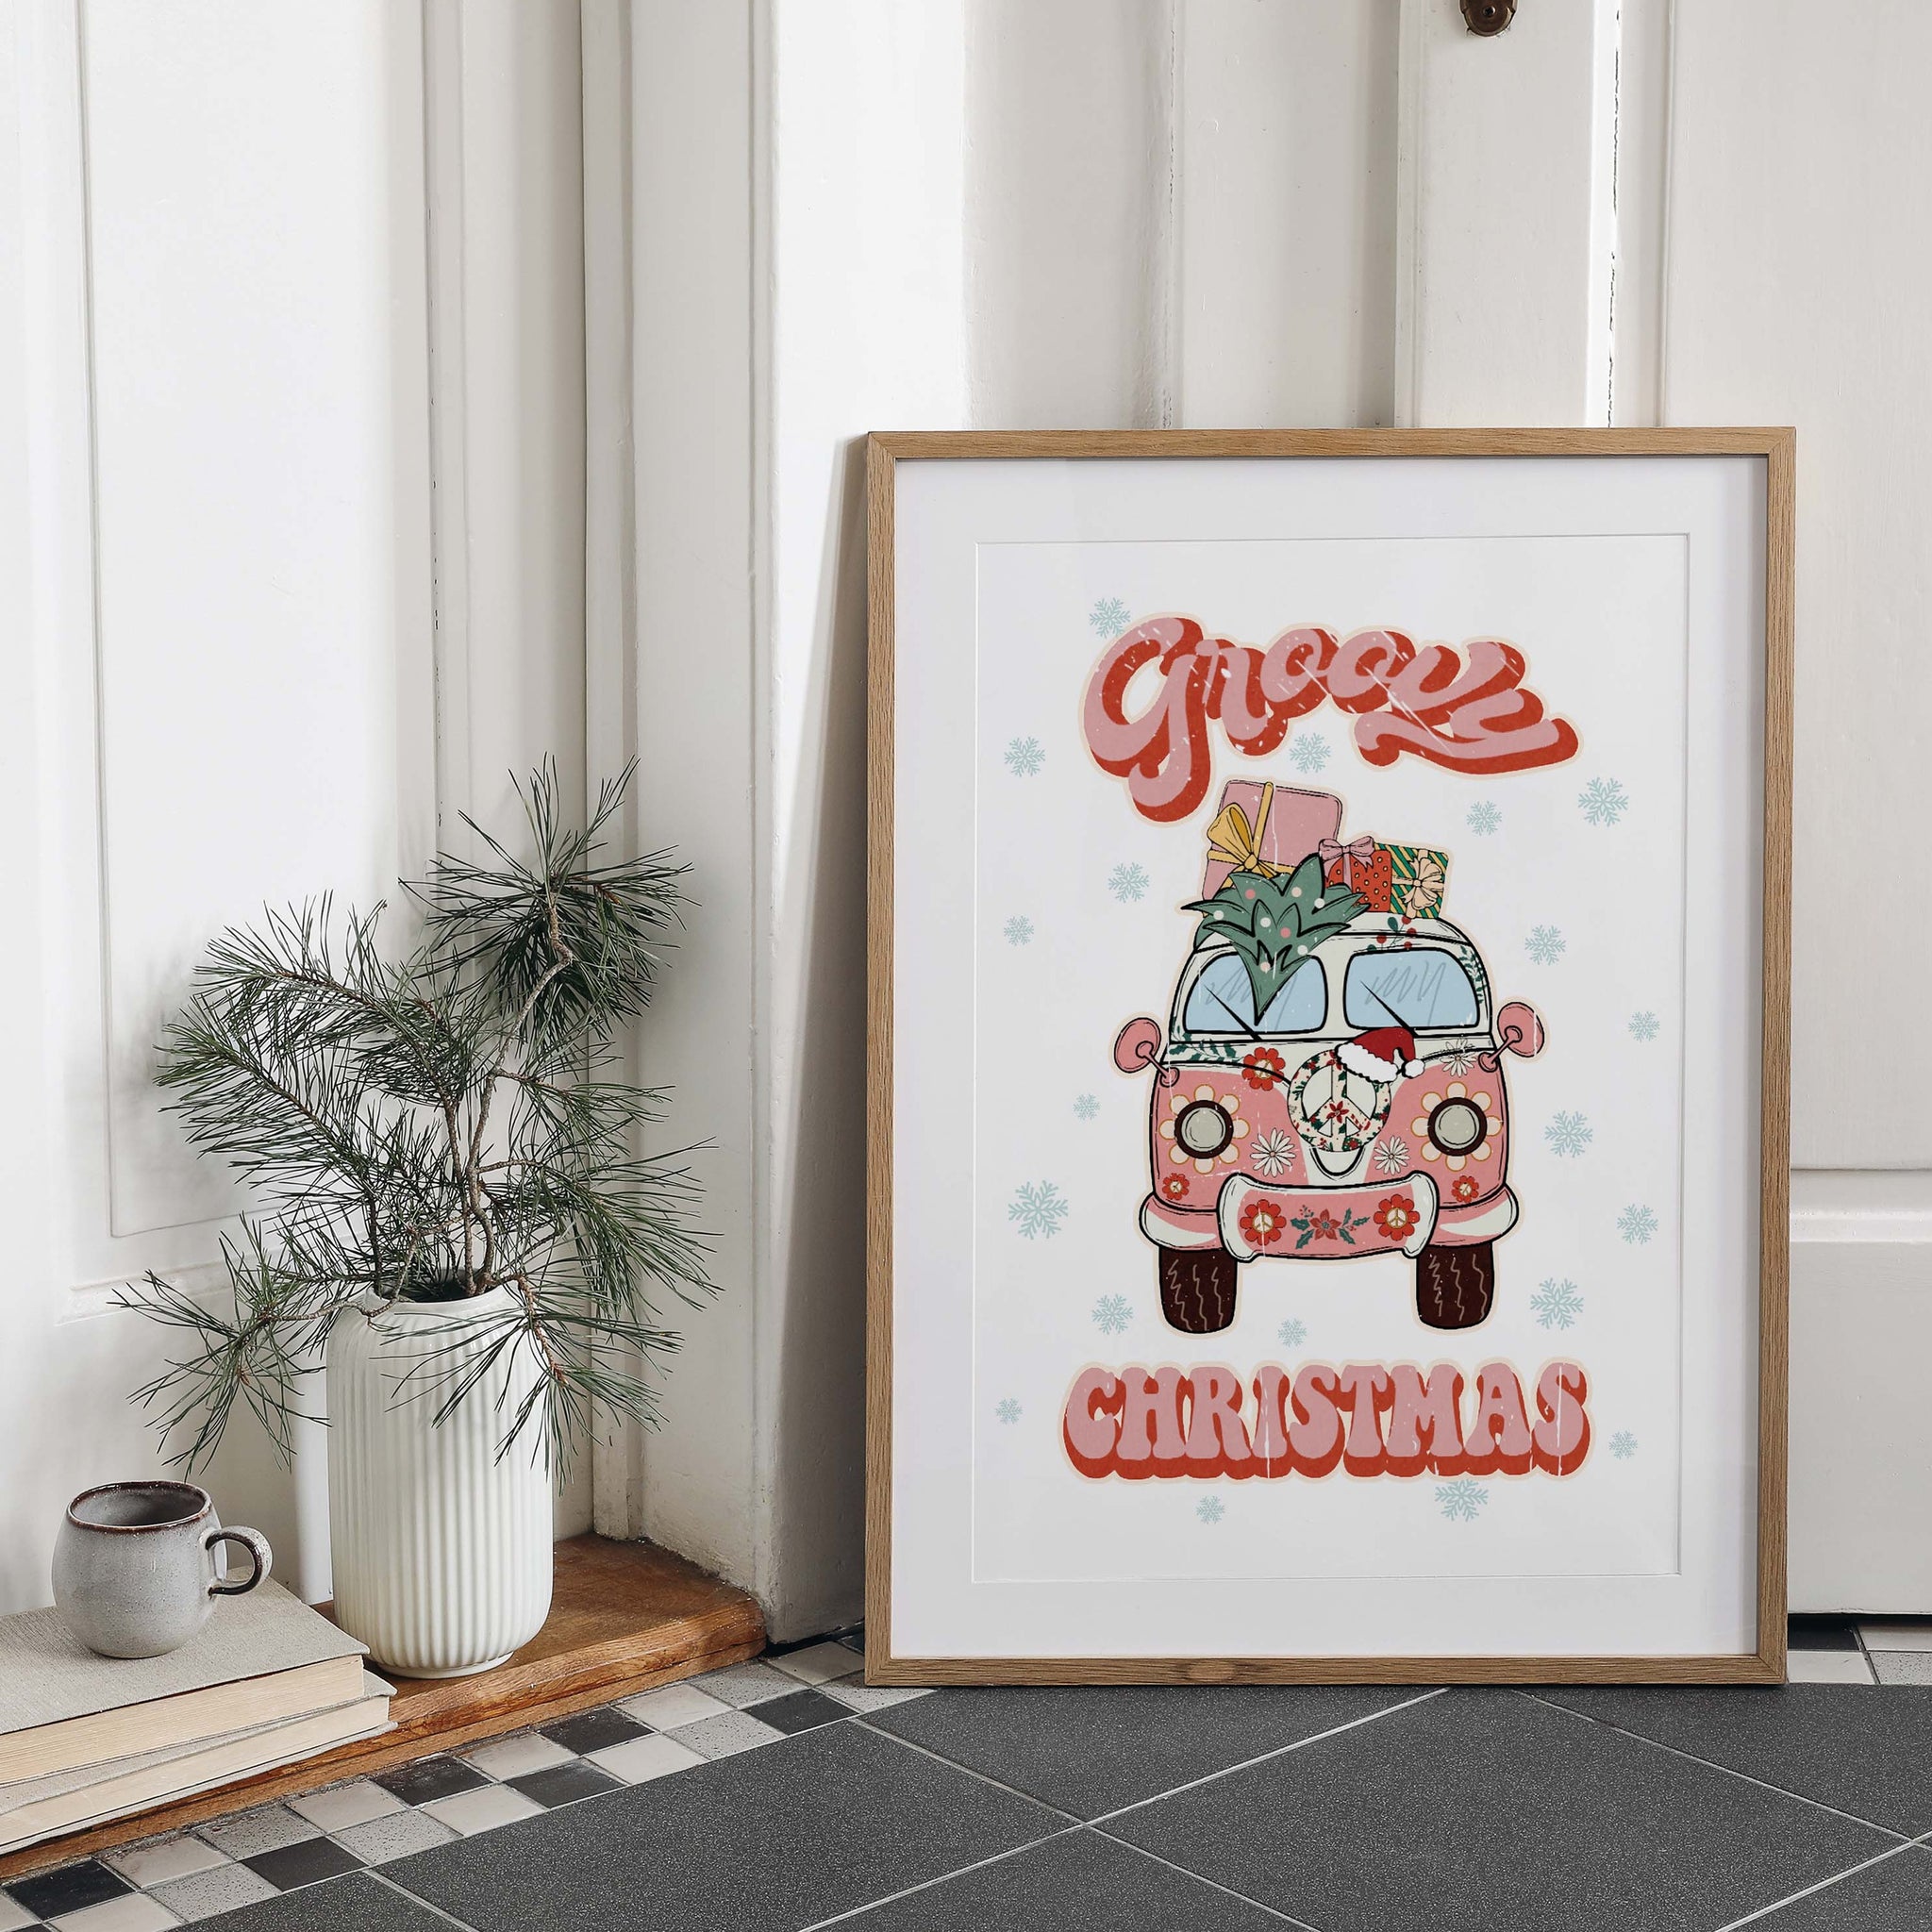 Groovy Christmas 8x10 Art Print